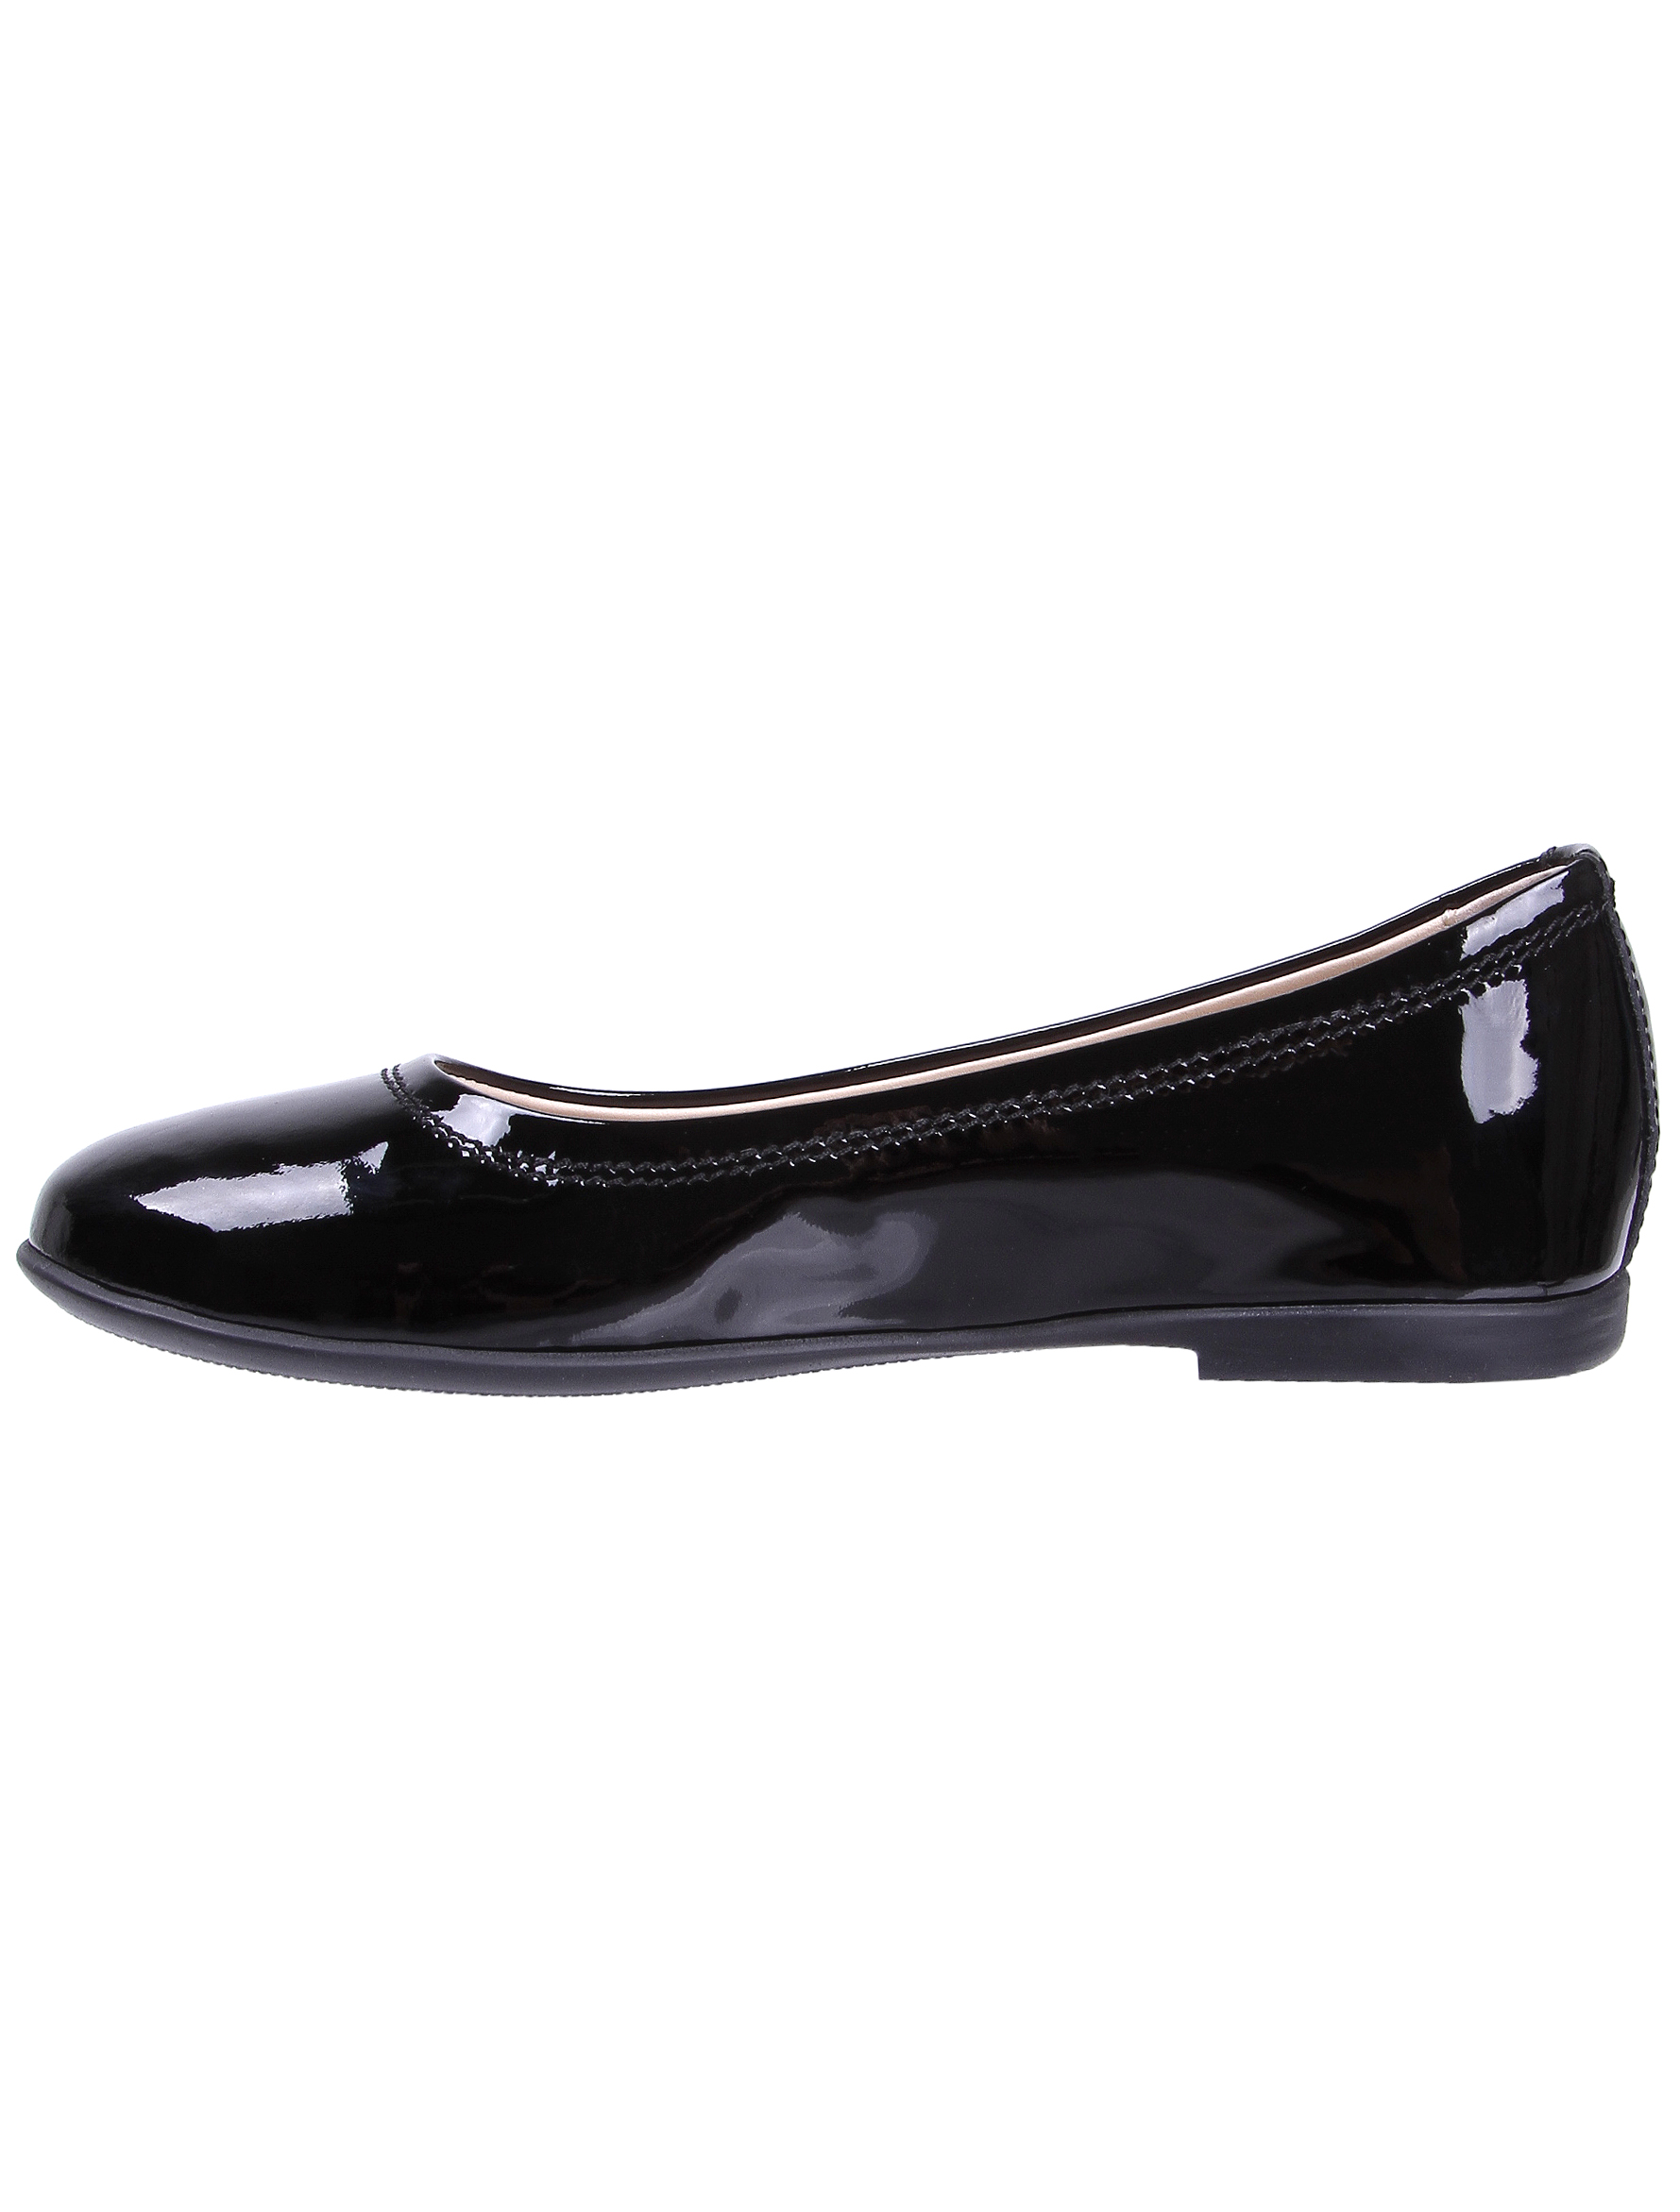 Туфли Florens 1913123, цвет черный, размер 28 2011109880323 - фото 3